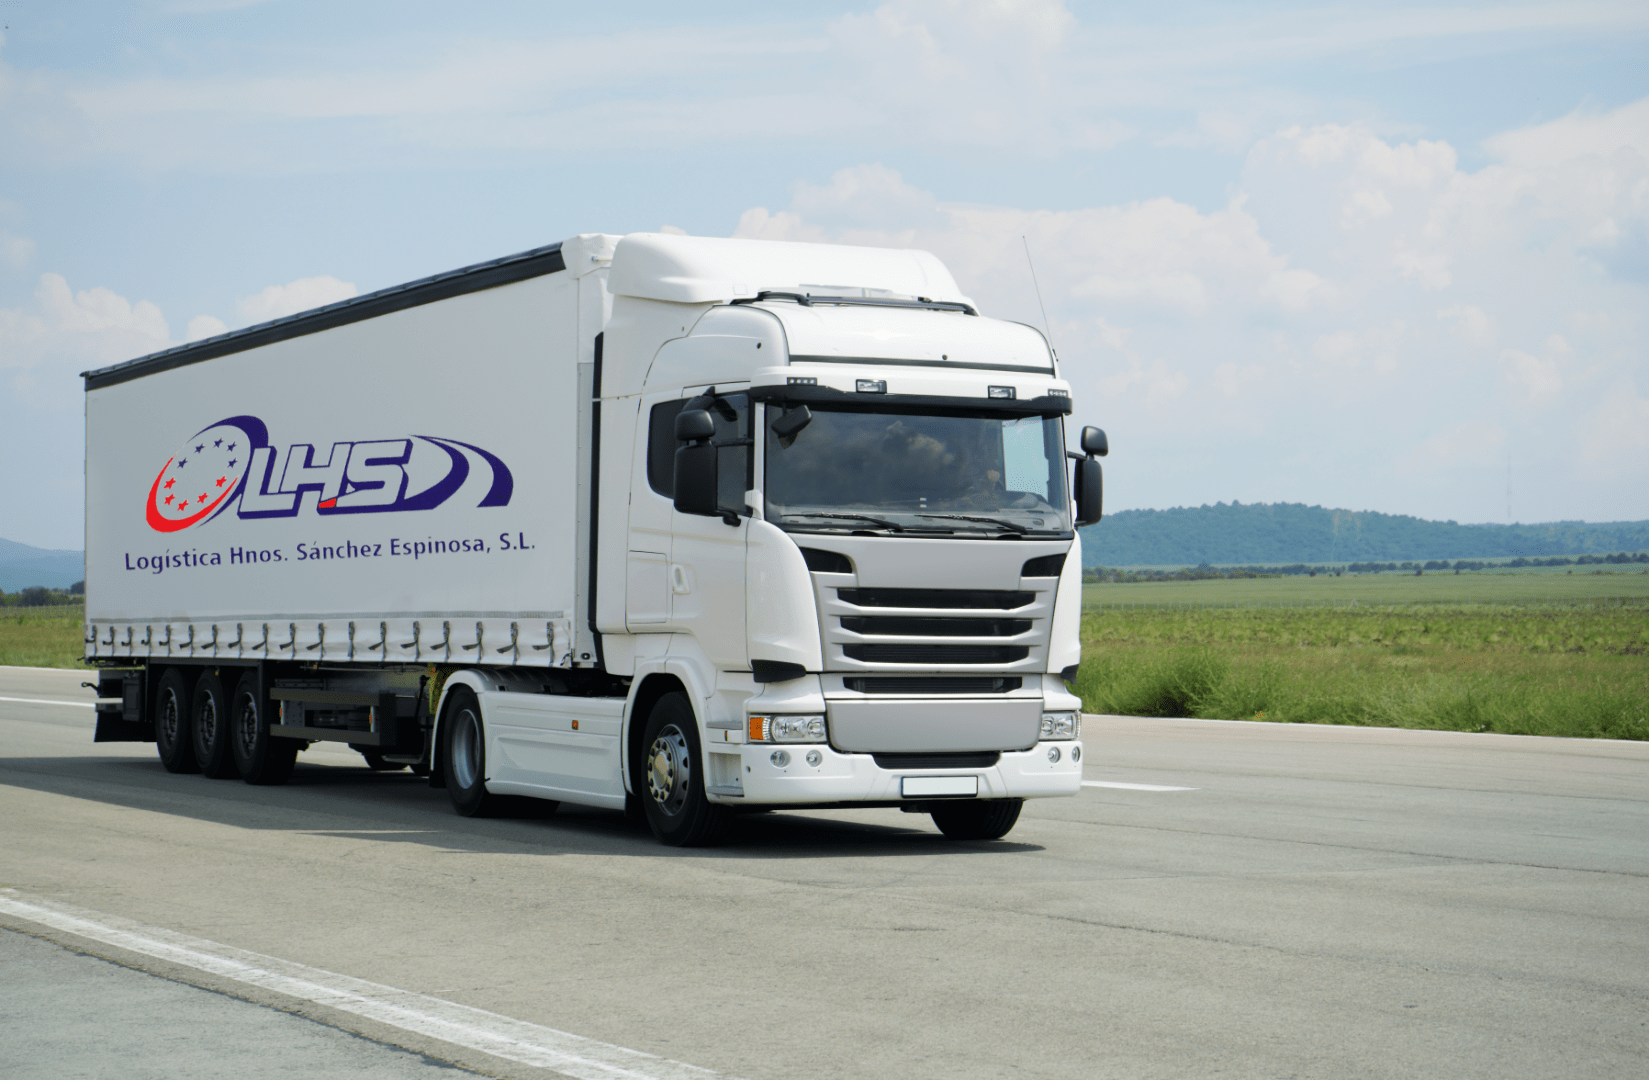 Empresa de transporte. Se muestra un camión con el logotipo de la empresa